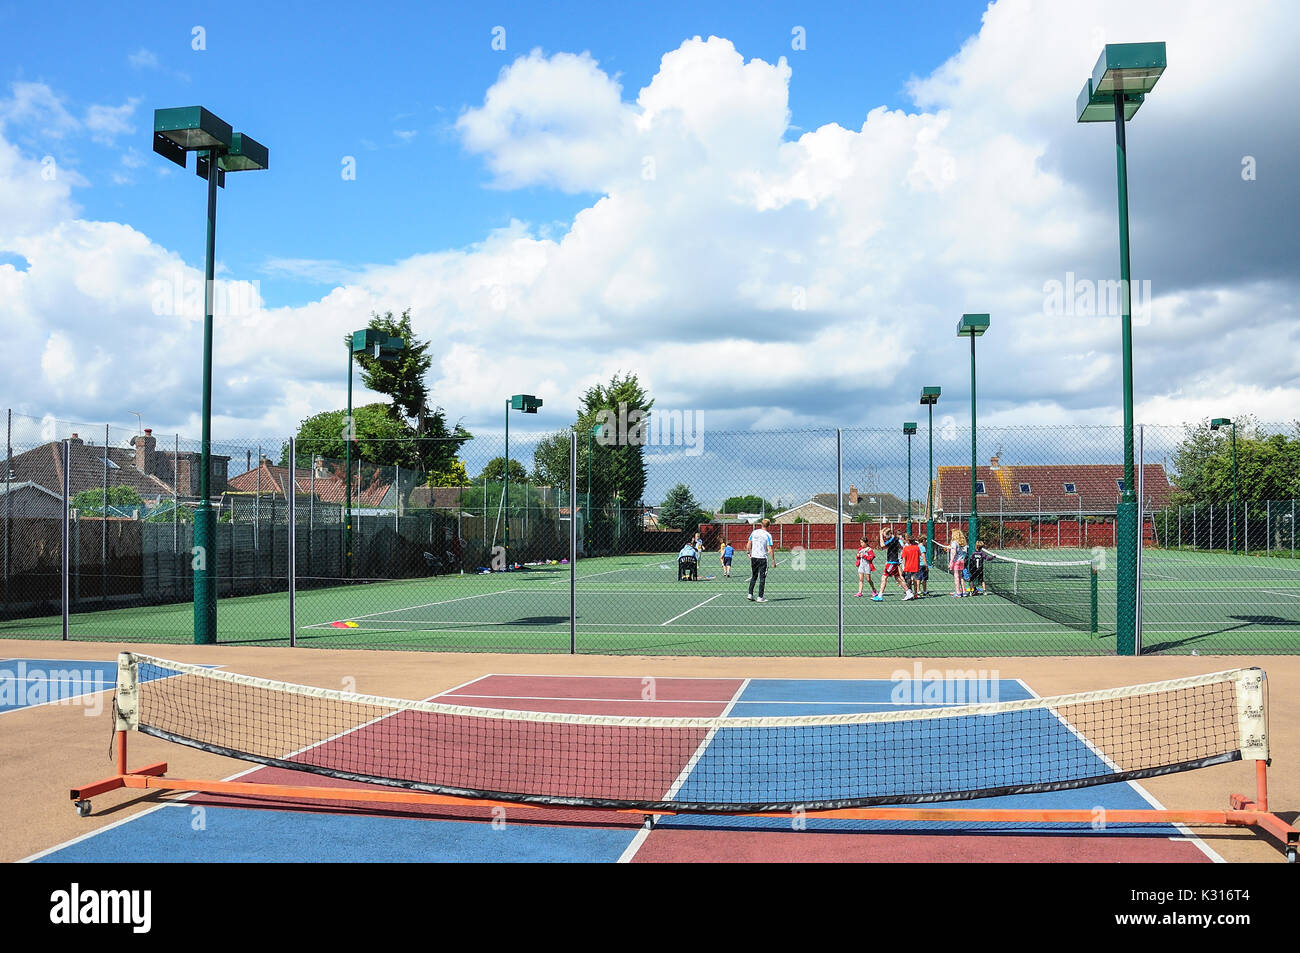 Camp de tennis d'été pour les enfants à Fordbridge Park, Ashford, Surrey, Angleterre, Royaume-Uni Banque D'Images